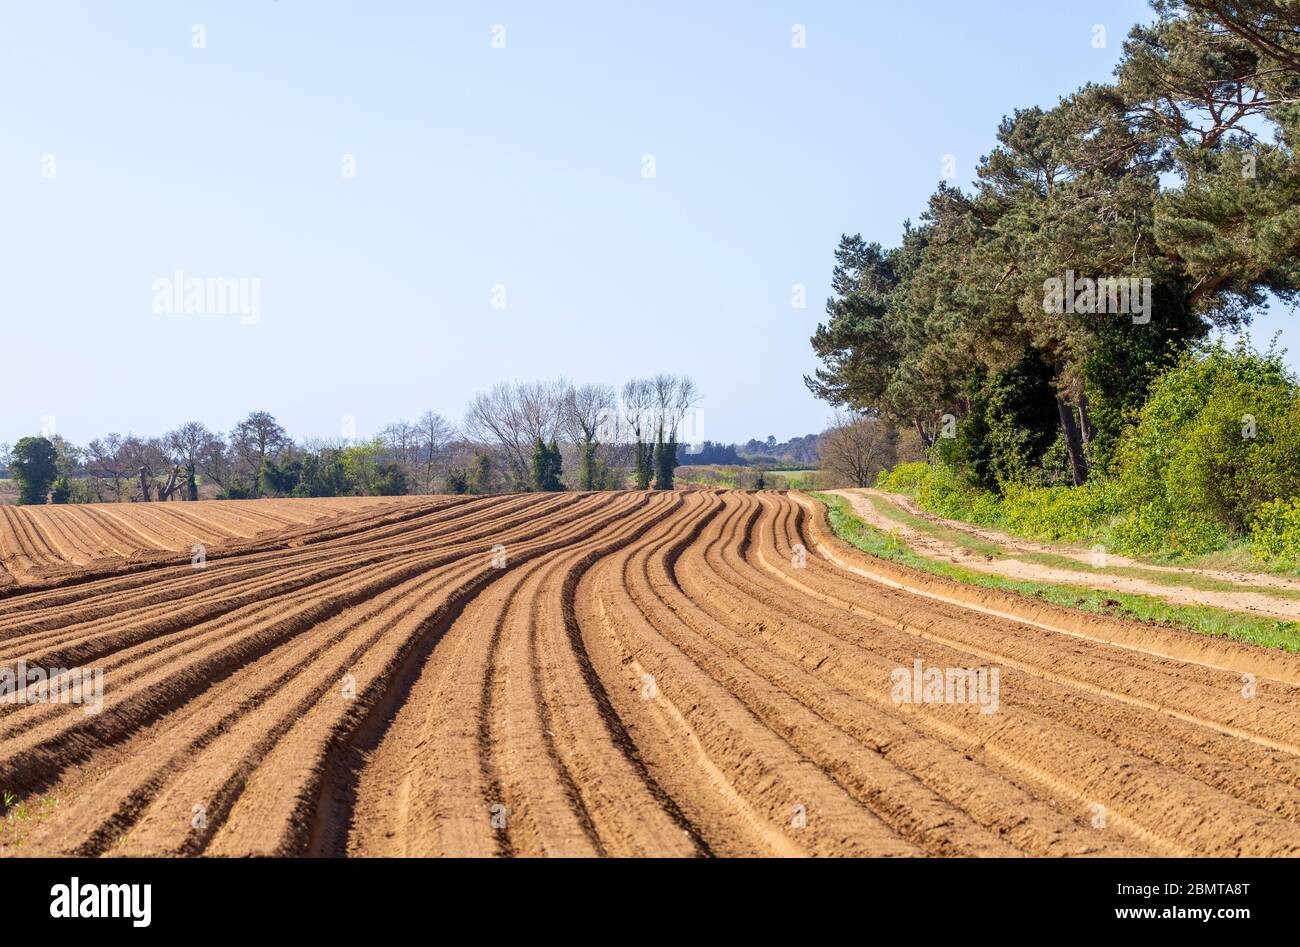 Furrows in sandy soil in field in Suffolk Sandlings farmland, Sutton, Suffolk, England, UK Stock Photo